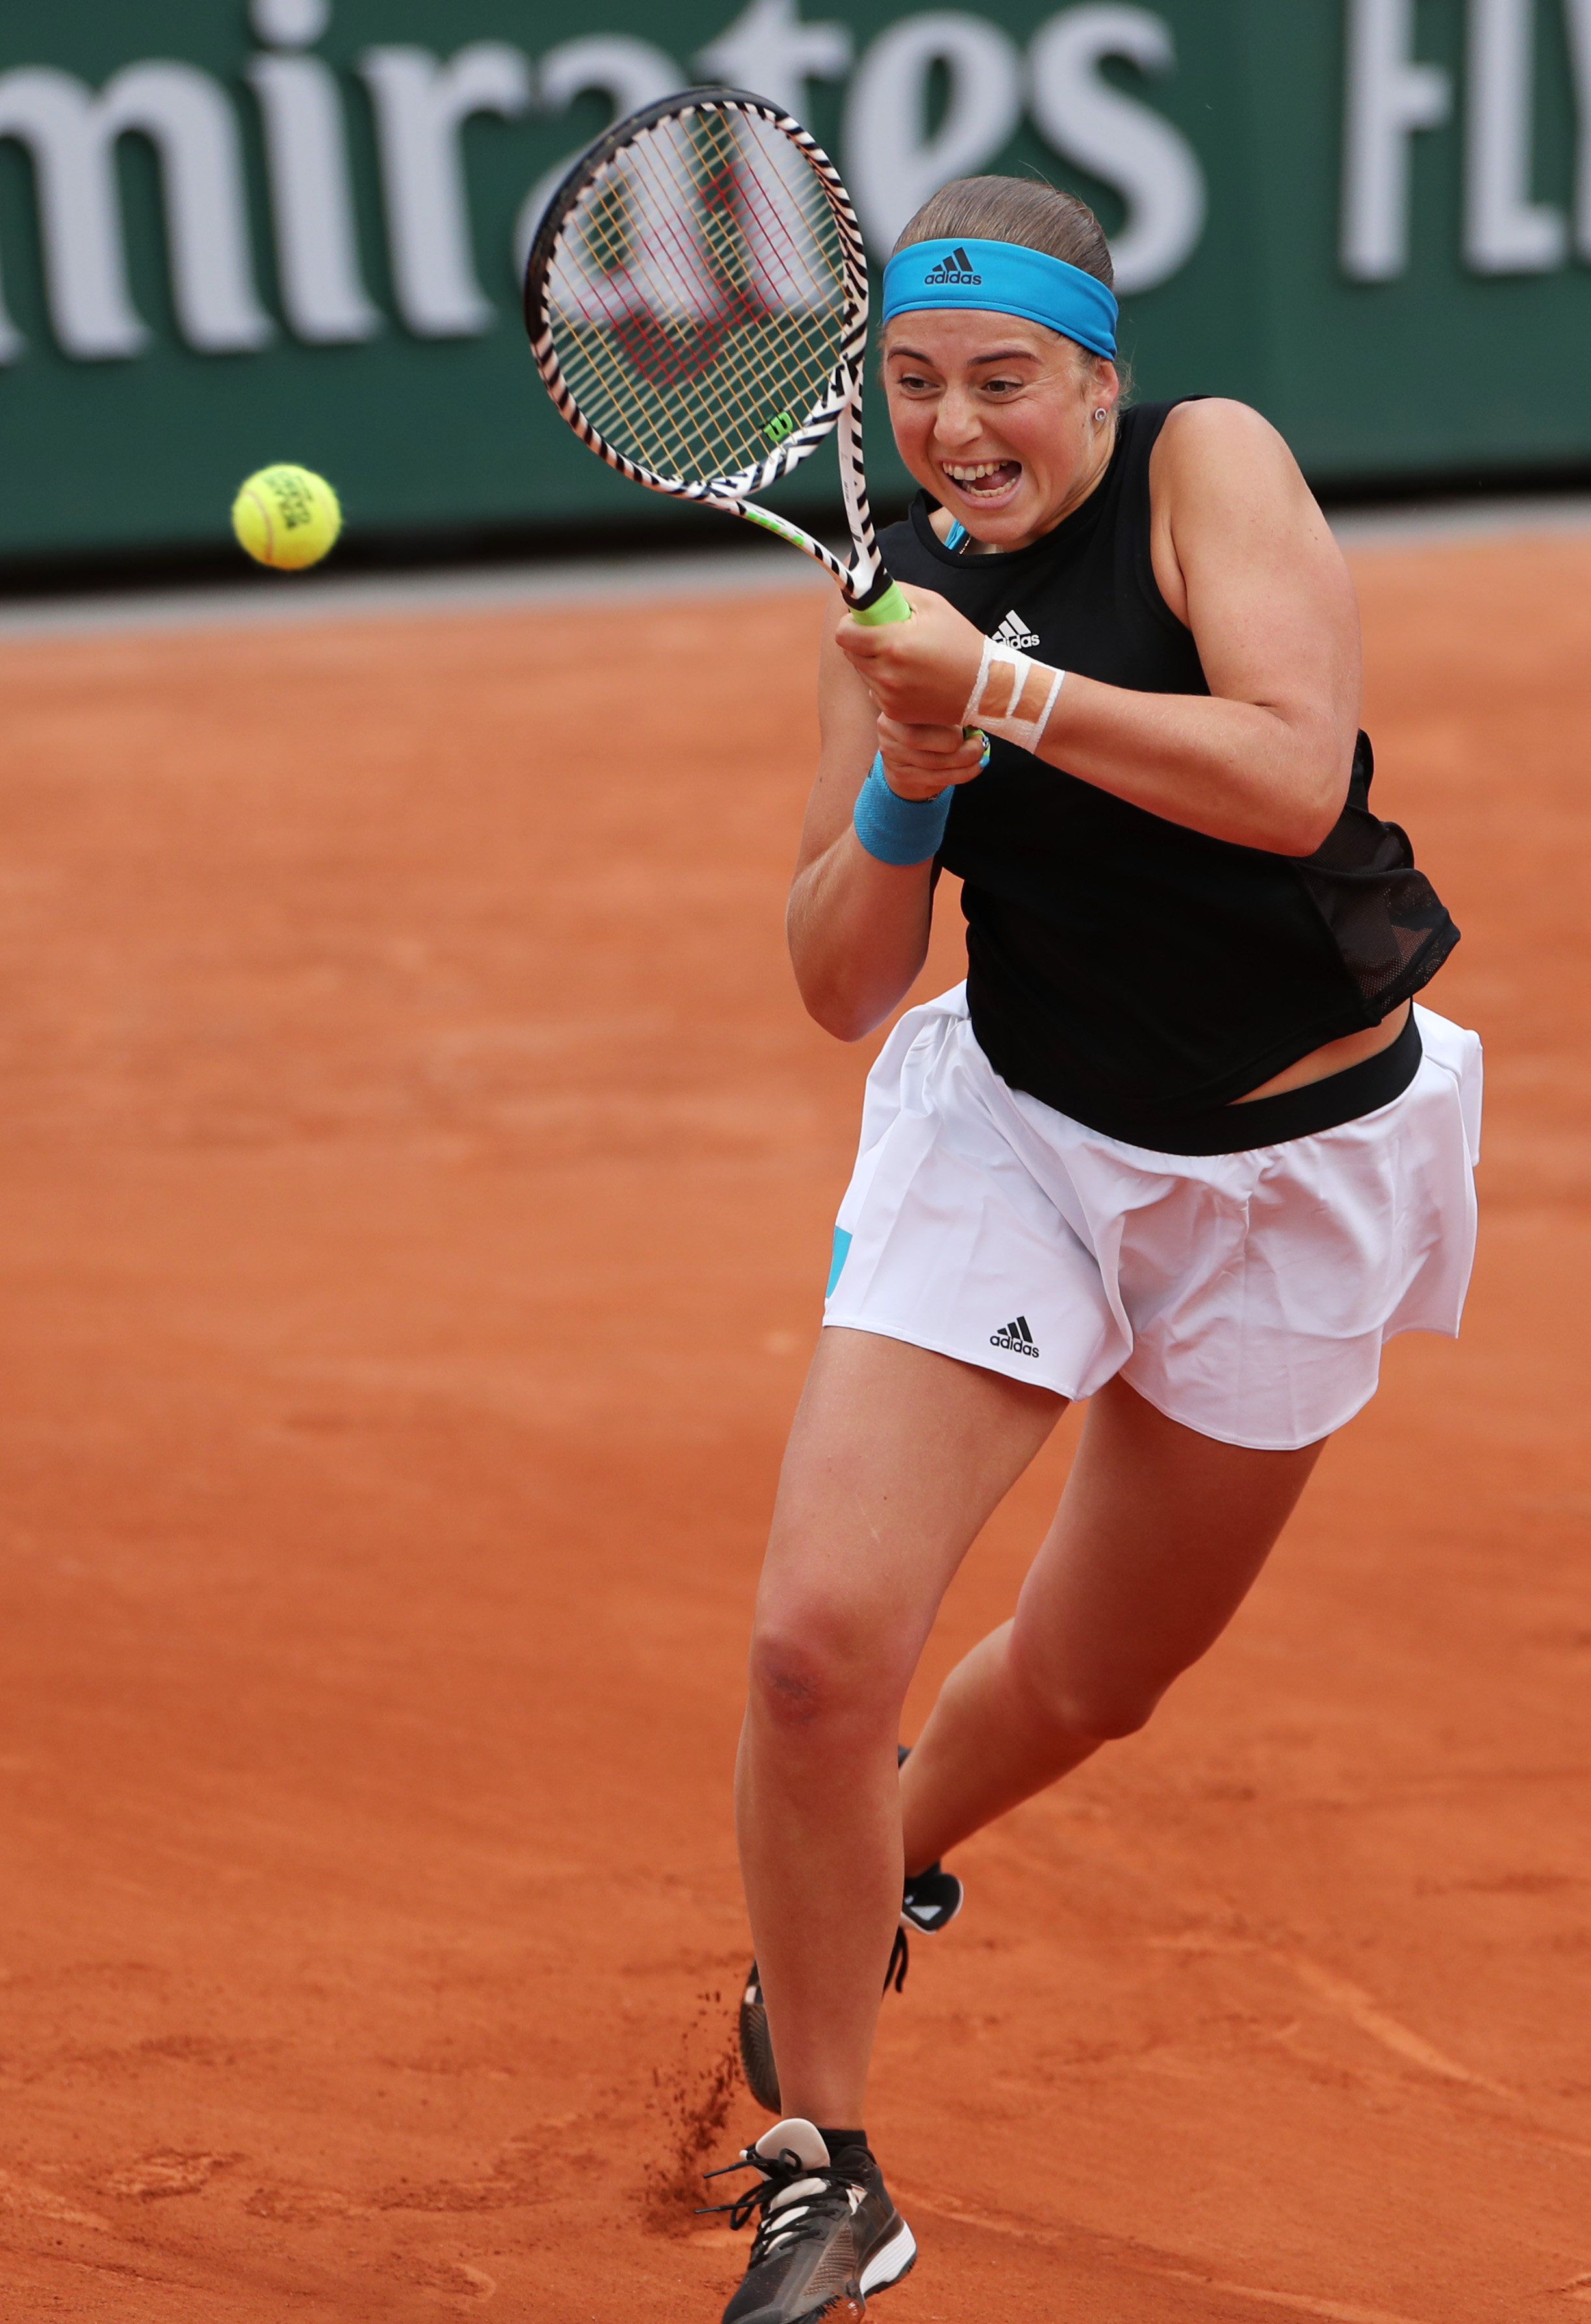 法国网球公开赛女单首轮比赛中,白俄罗斯选手阿扎伦卡以2比0战胜